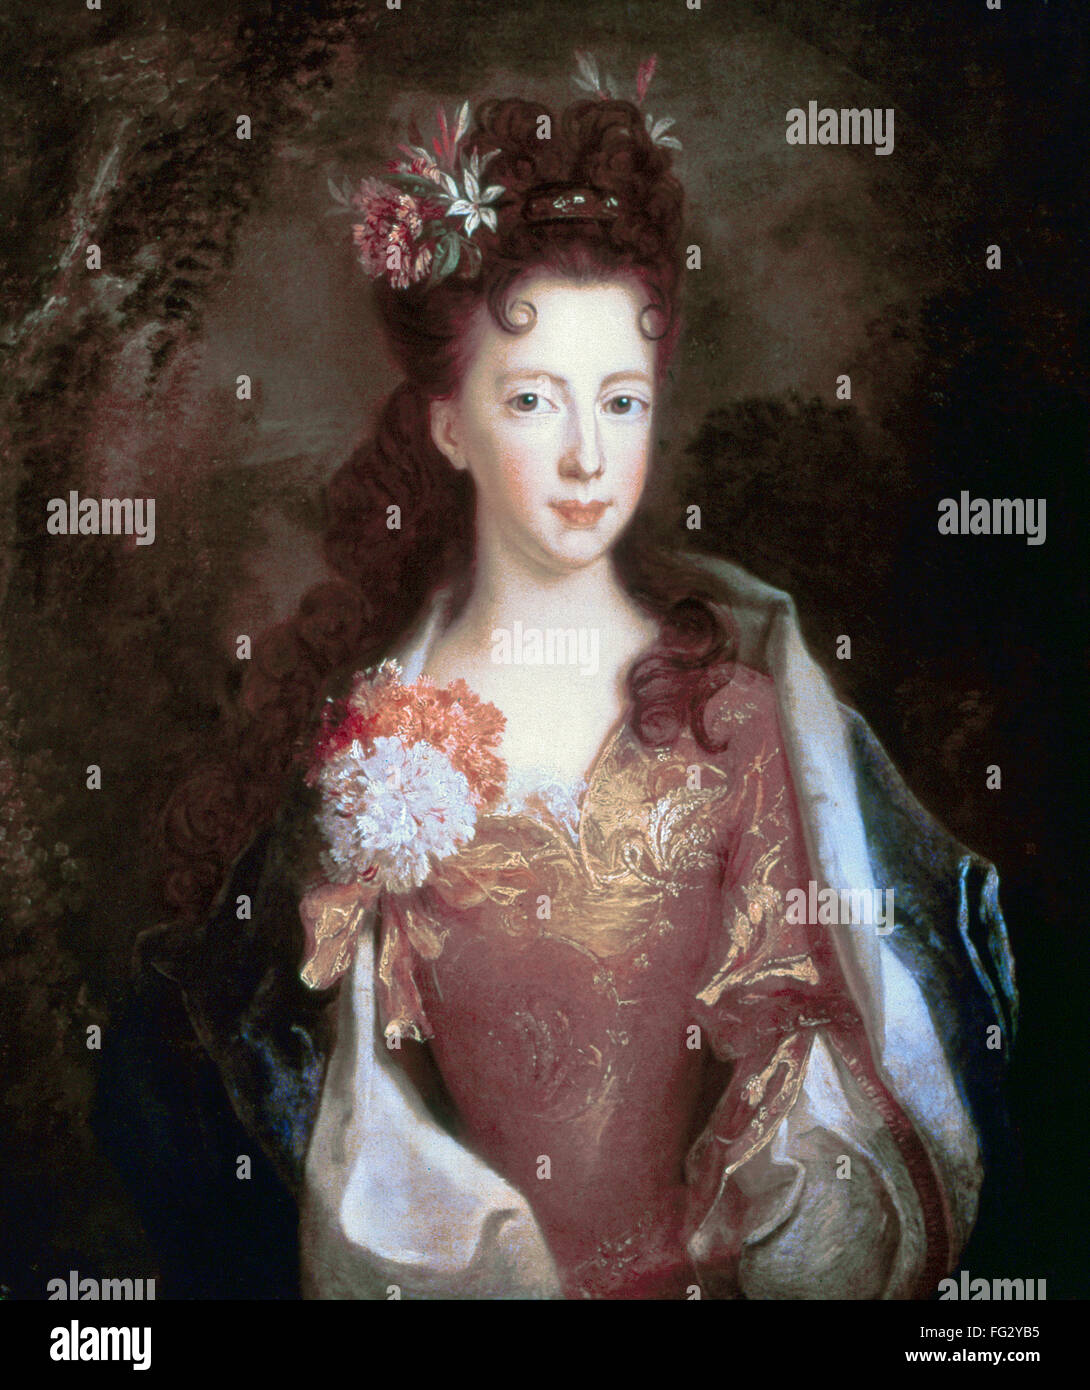 LOUISA MARIA (1692-1712). /nLouisa Maria Theresa Stuart. Jacobite princess; sister of James Francis Edward Stuart, the Old Pretender. Oil on canvas, c1704, attributed to Alexis Simon Belle. Stock Photo